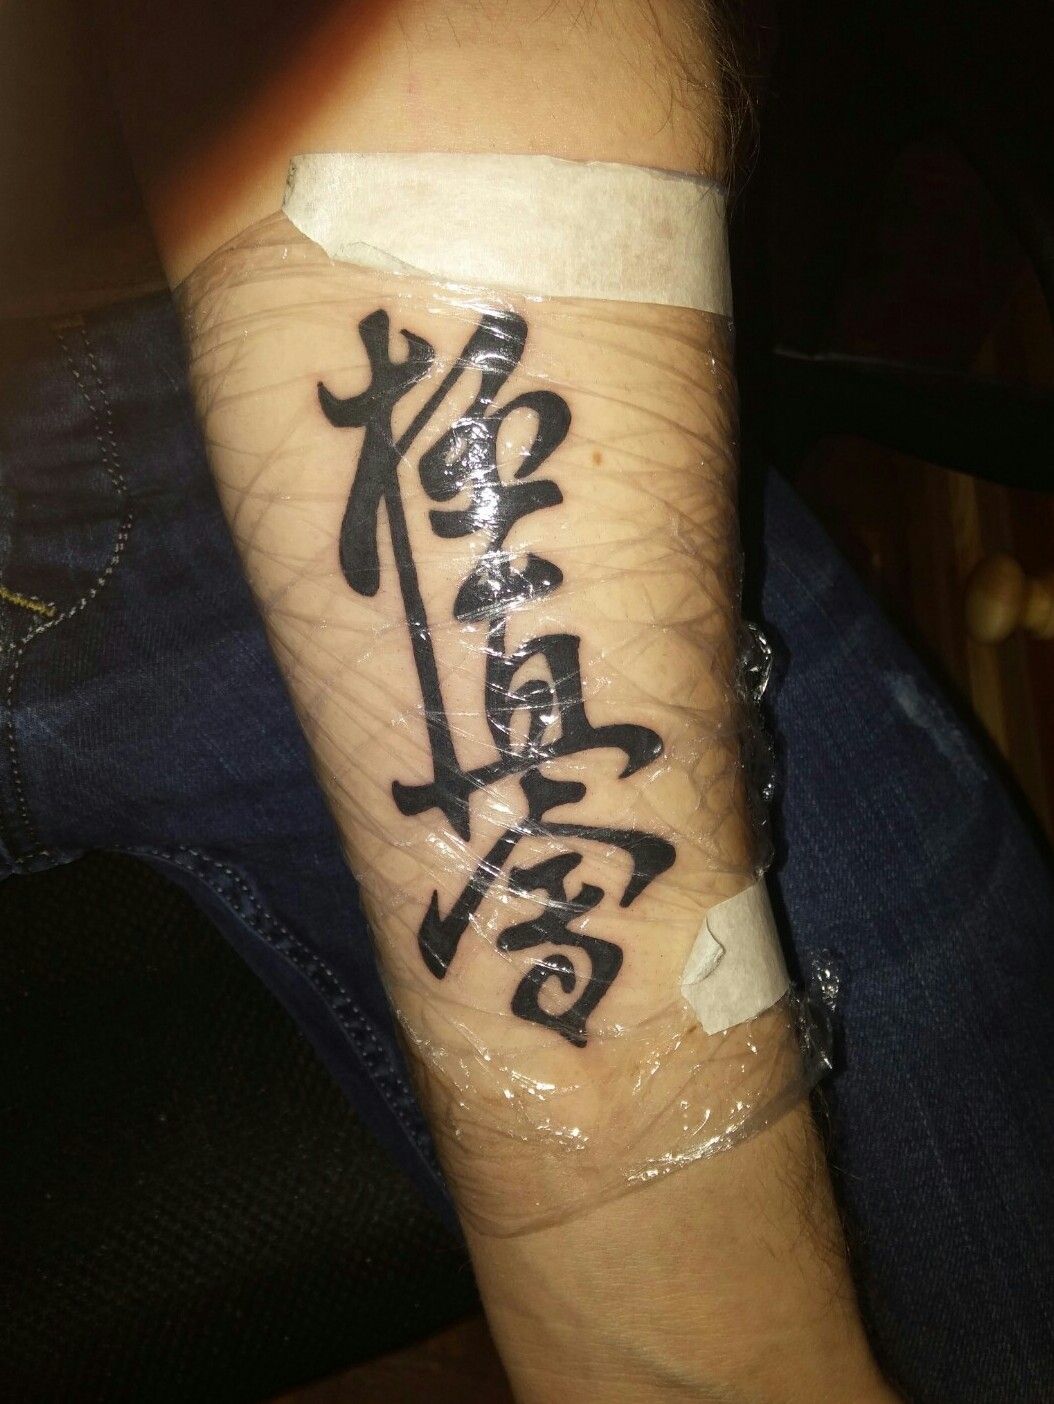 Tattoo uploaded by Pipicz Tamás • My tattoo. #kyokushin #karate #karatekid # symbol #kanji #traditional #martialarts • Tattoodo